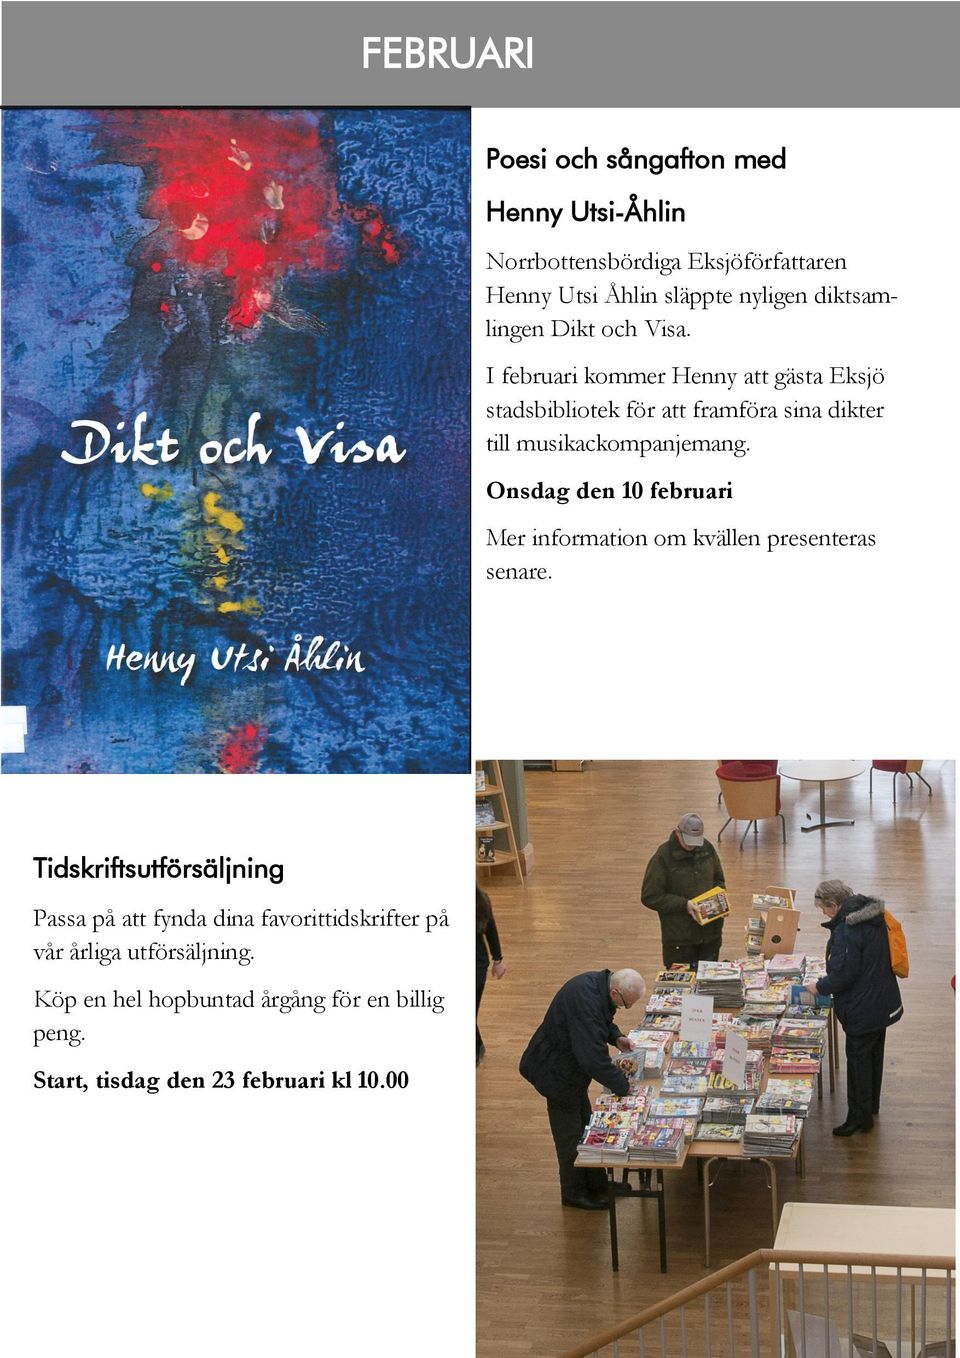 och Visa. I februari kommer Henny att gästa Eksjö stadsbibliotek för att framföra sina dikter till musikackompanjemang.